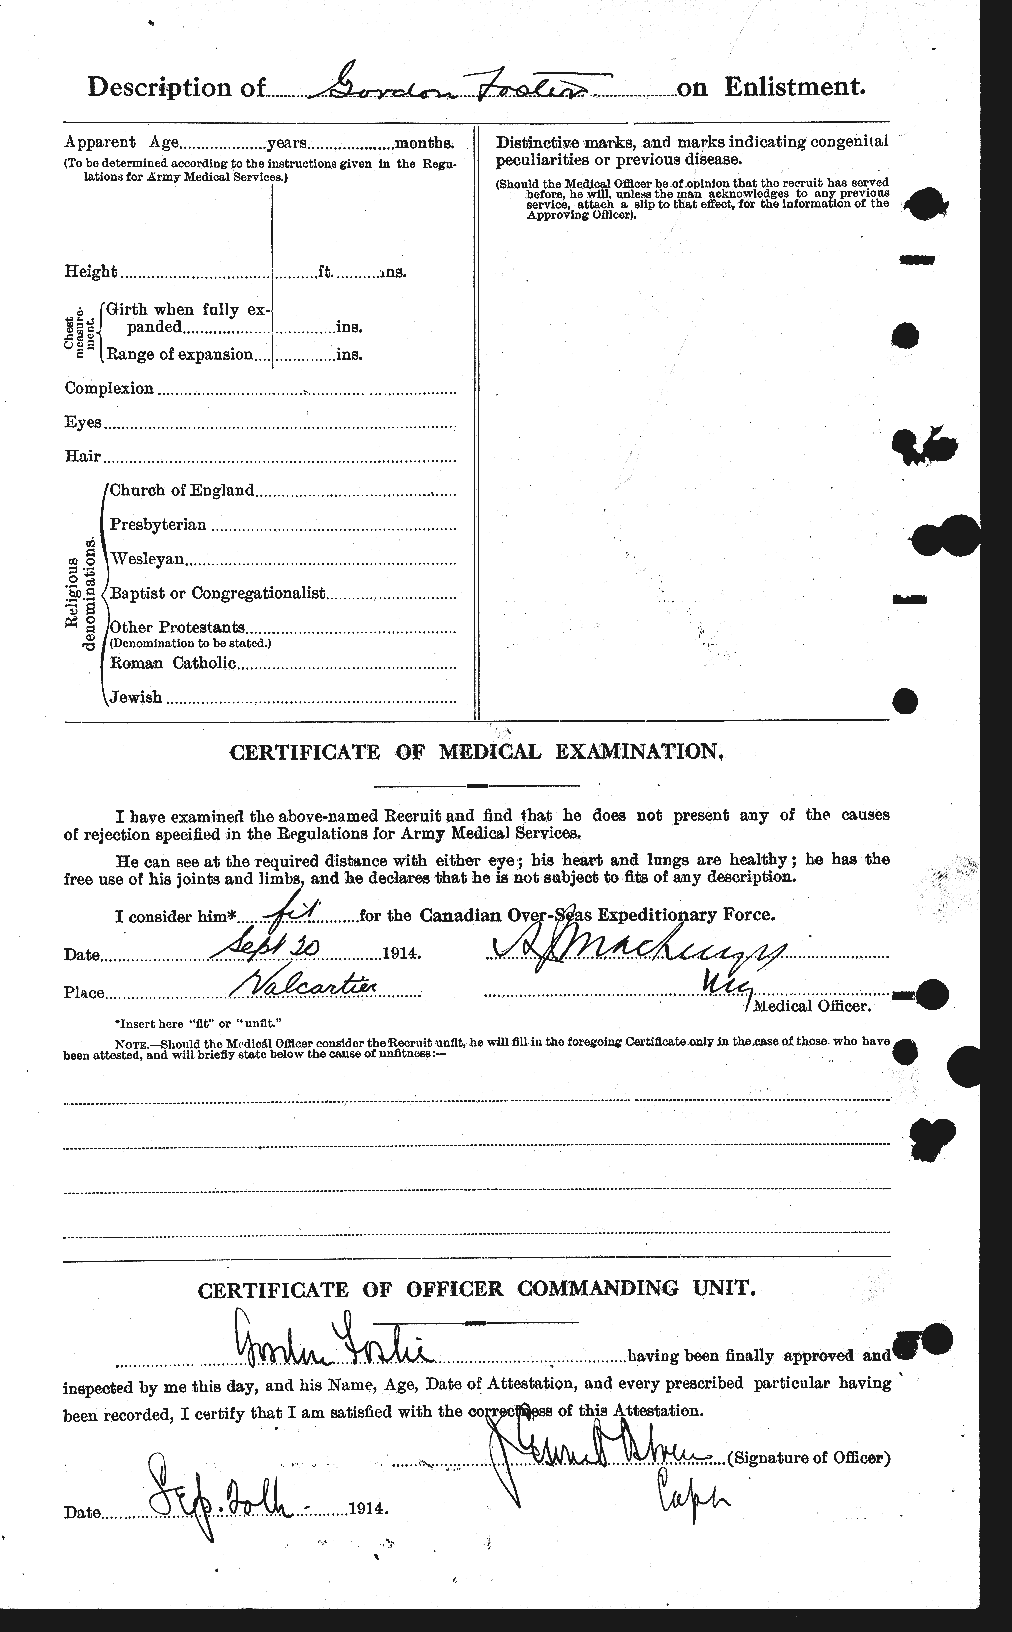 Dossiers du Personnel de la Première Guerre mondiale - CEC 330717b